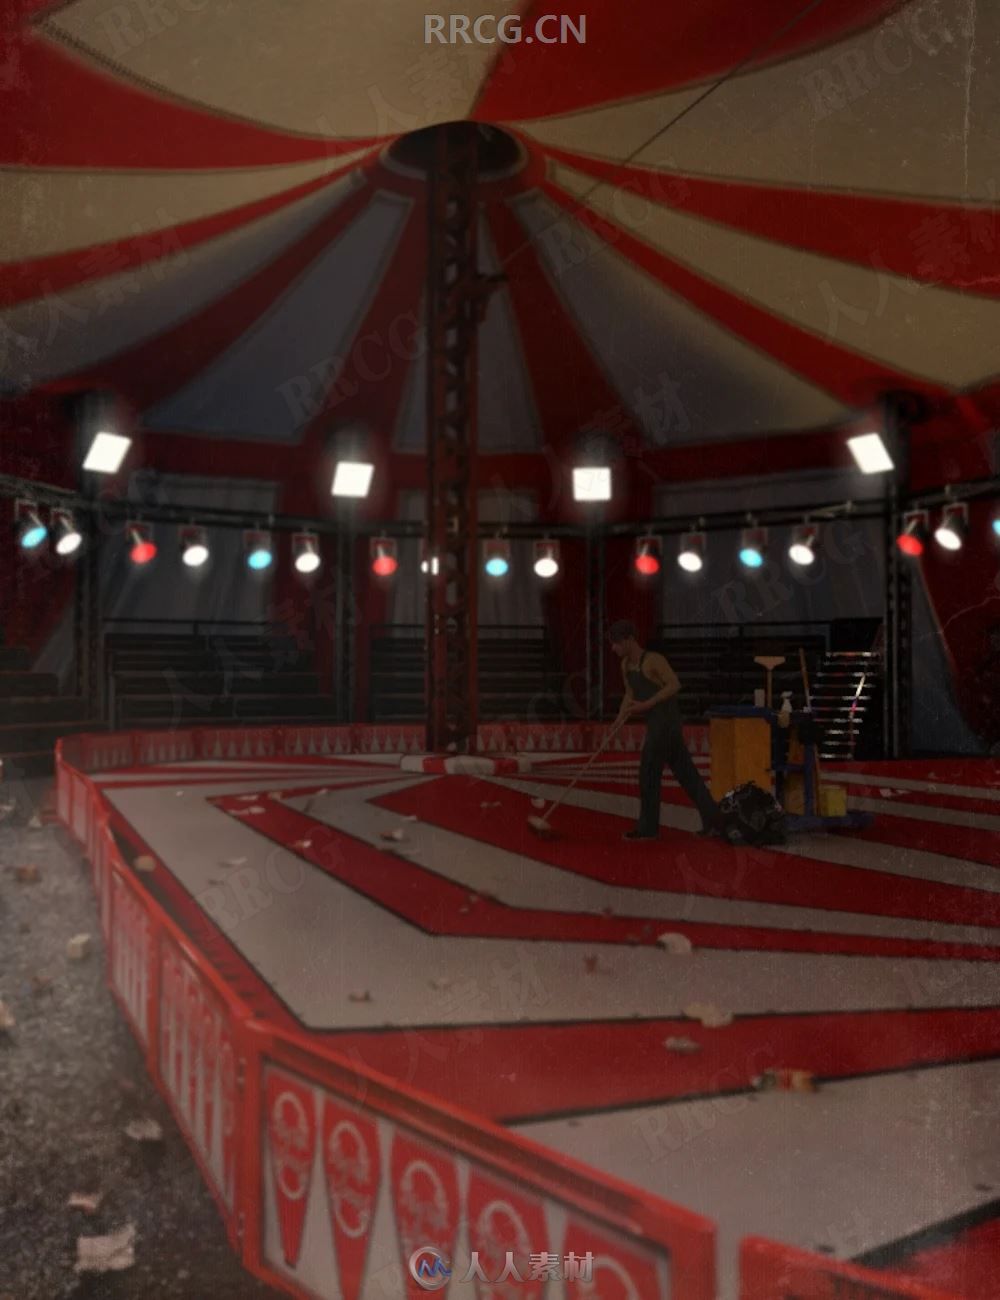 马戏团帐篷外观及室内场景3D模型合集